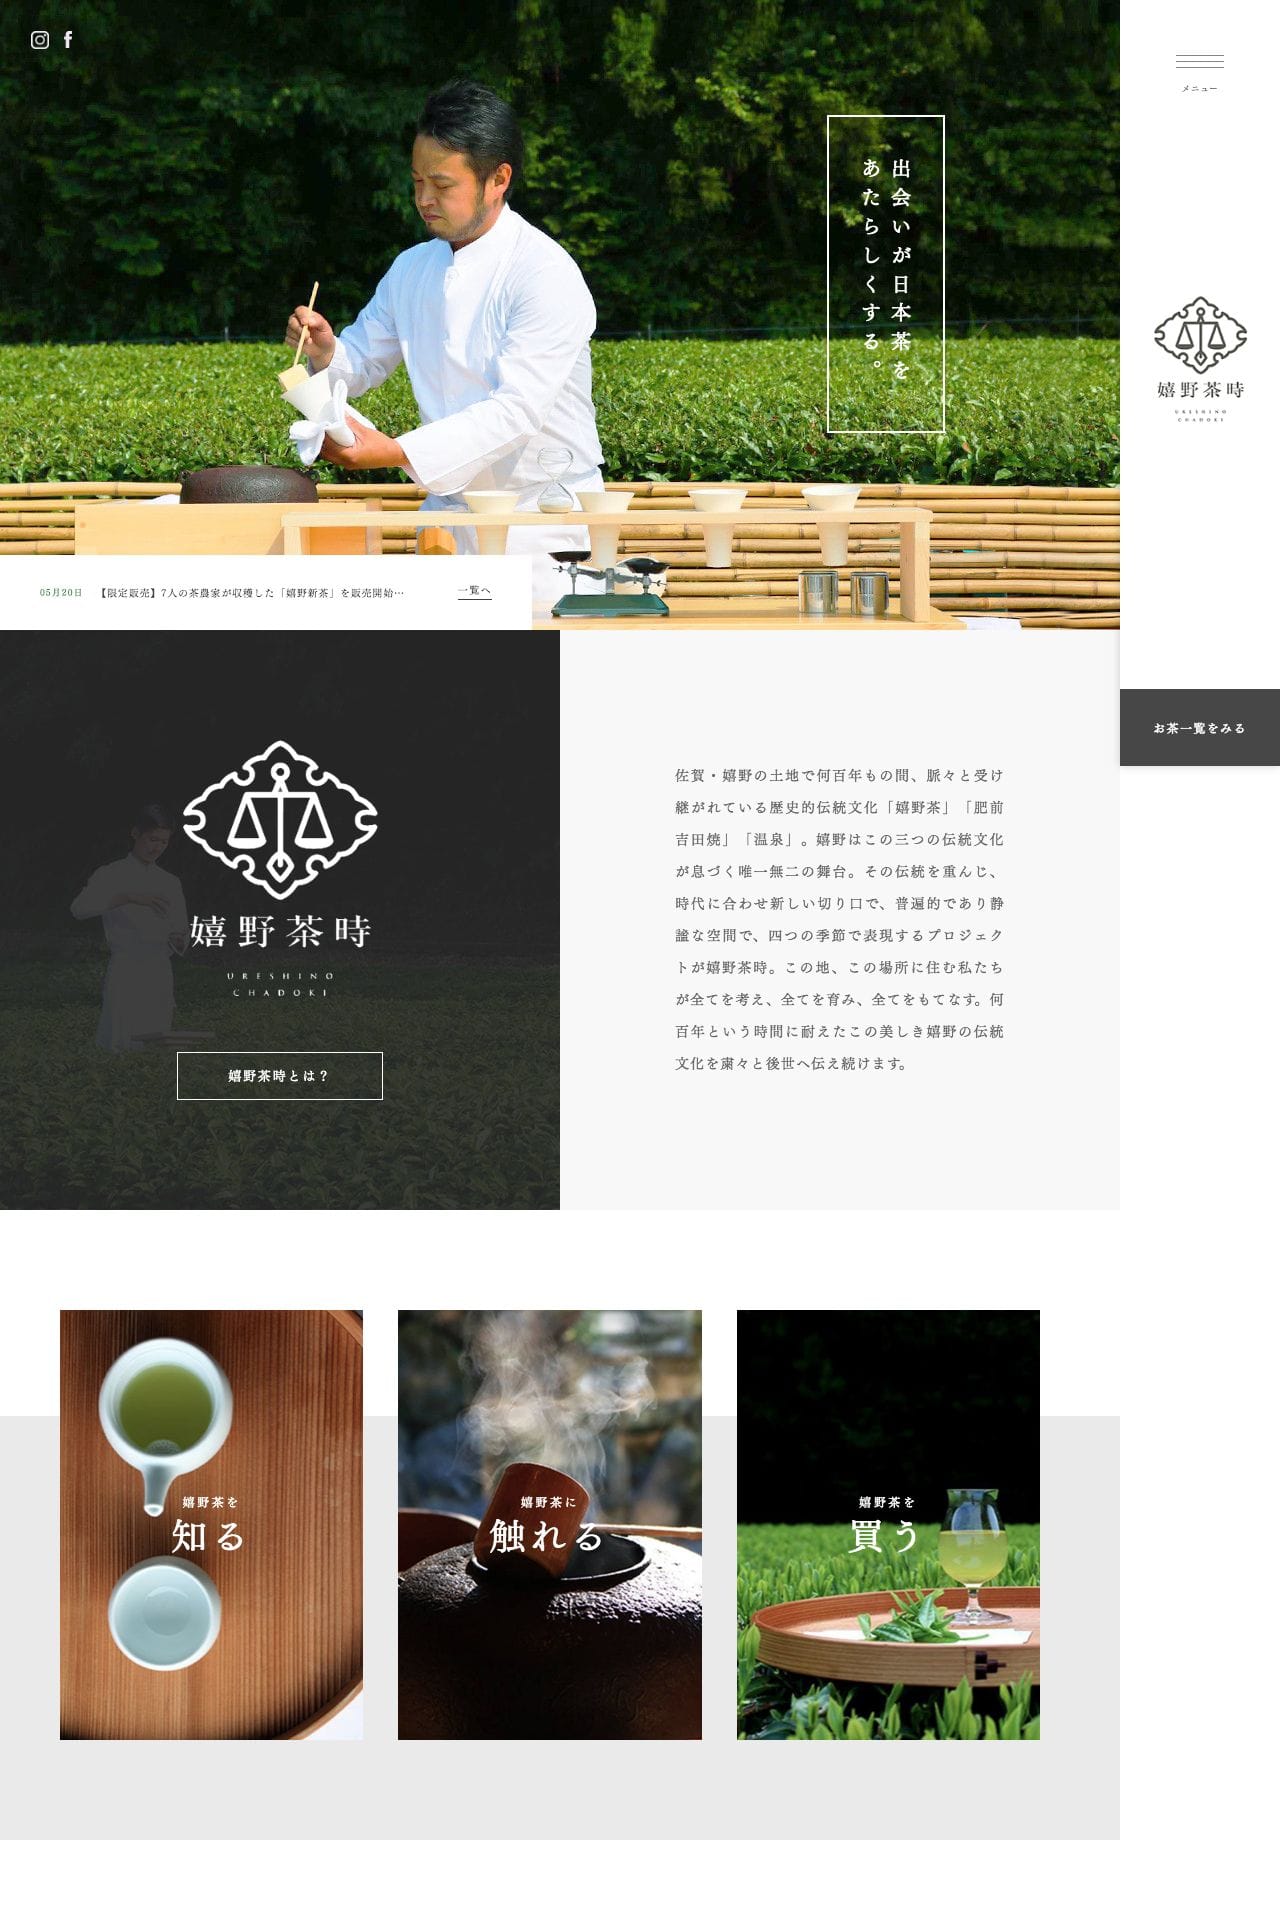 【嬉野茶時】公式オンラインショップ - オリジナル嬉野茶販売サイト